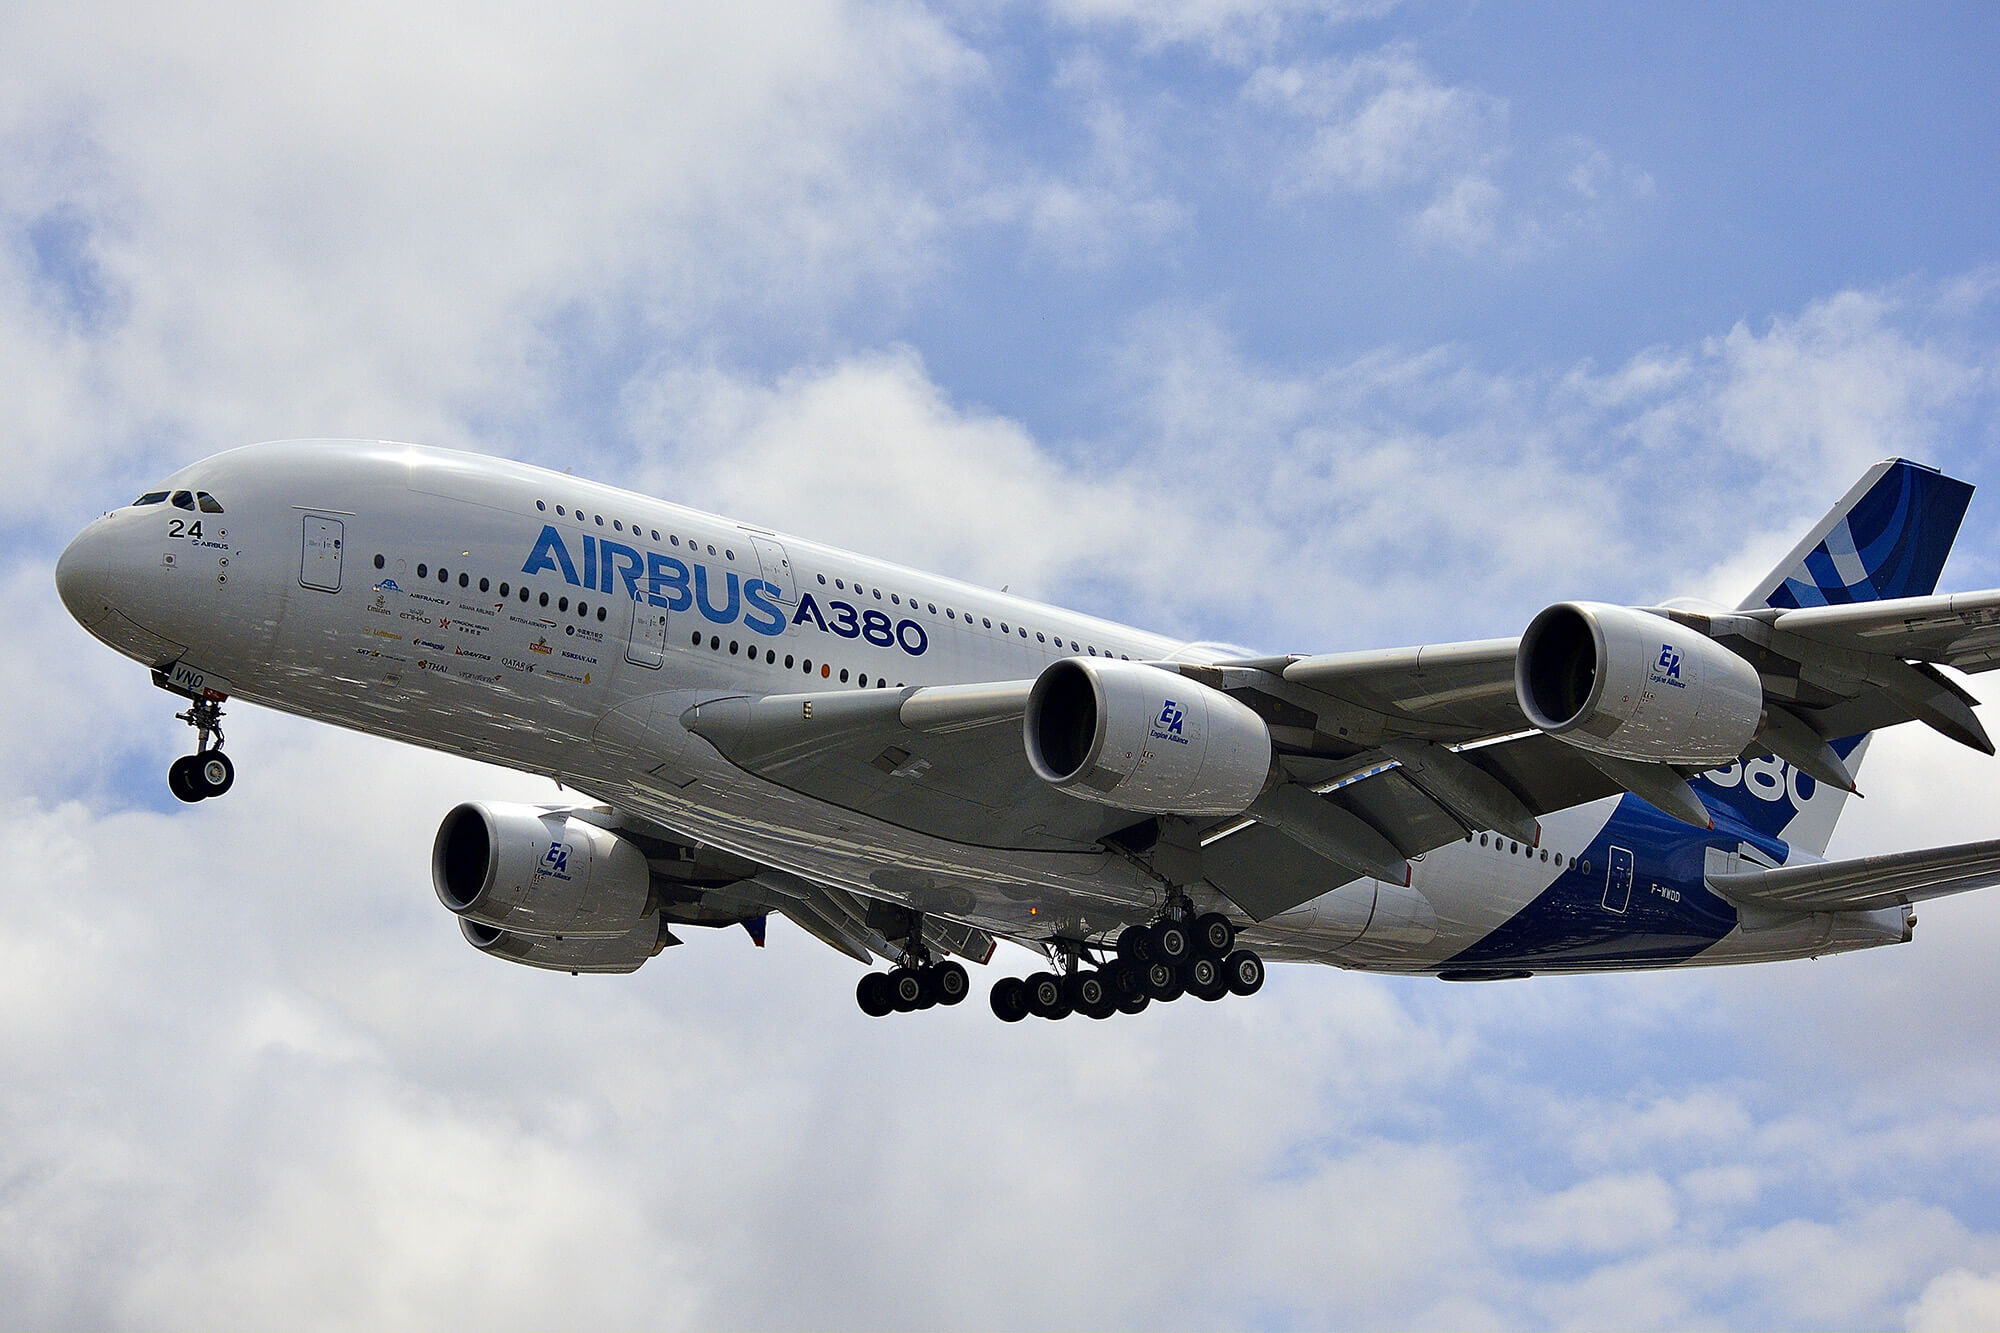 Airbus aircraft